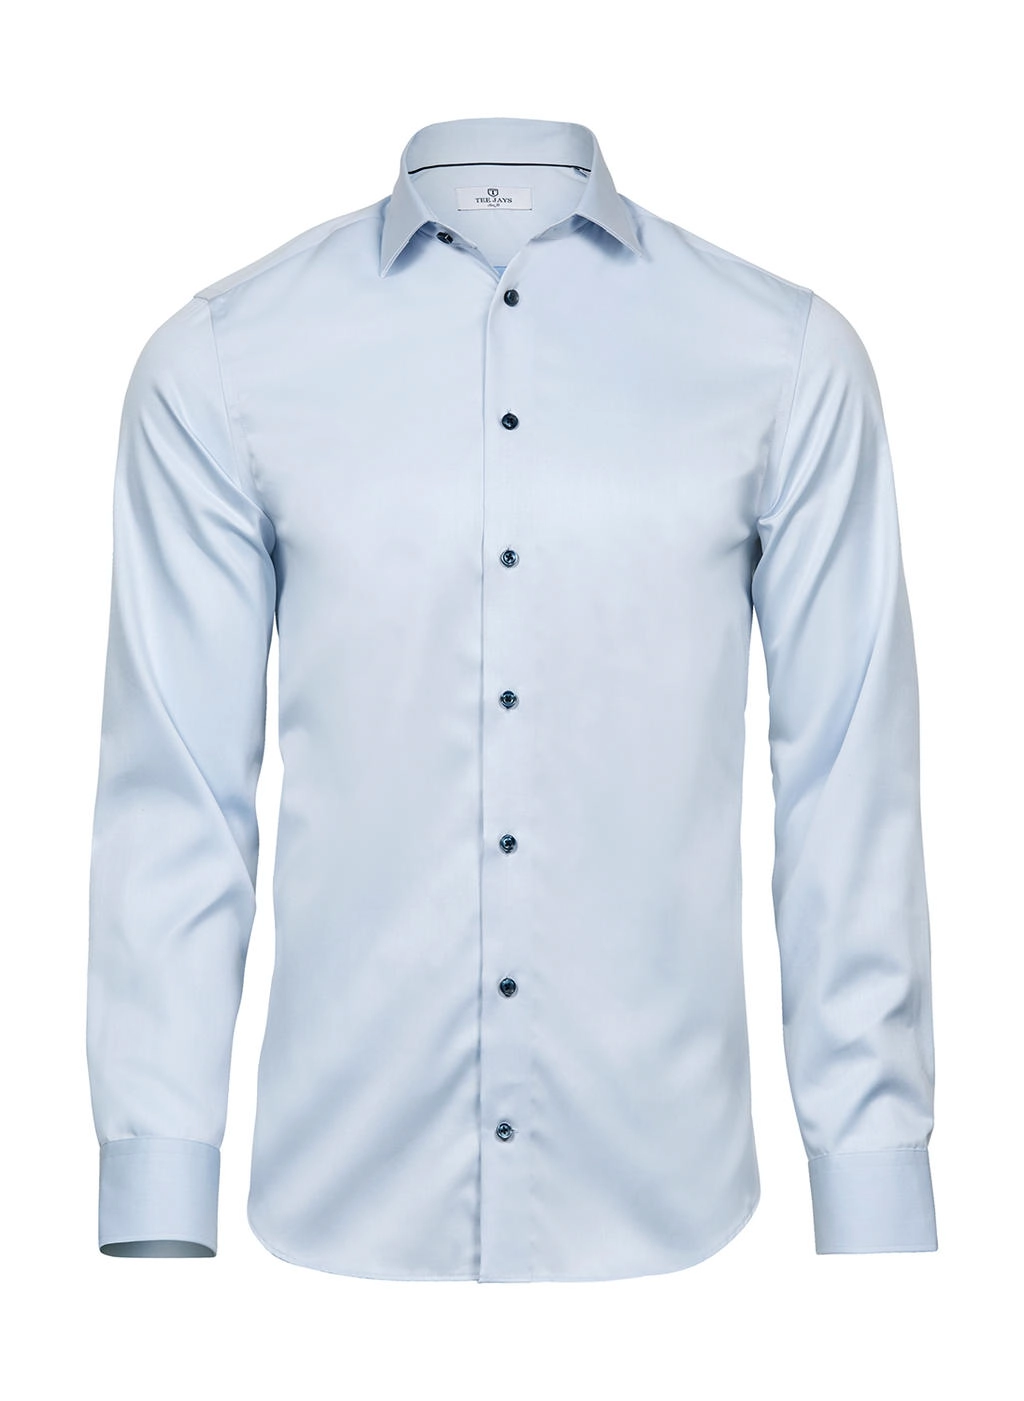 Luxury Shirt Slim Fit zum Besticken und Bedrucken in der Farbe Light Blue/Blue mit Ihren Logo, Schriftzug oder Motiv.